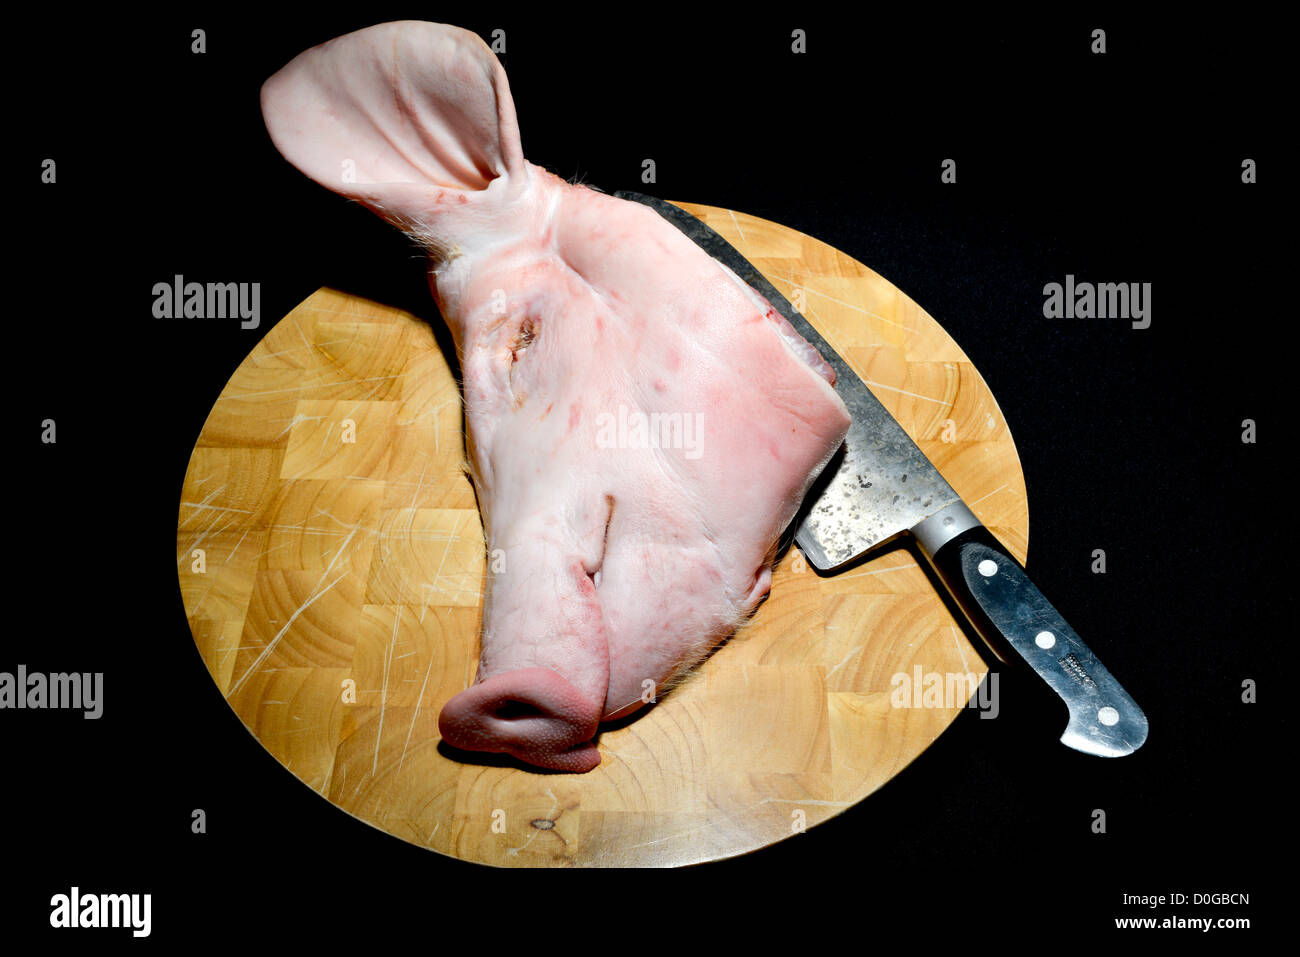 Rohes Schweine geschlachtet werden Kopf und einem großen Deba Messer auf einem Buchenholz Metzger Block, Schneidebrett mit einem schwarzen Hintergrund. Stockfoto